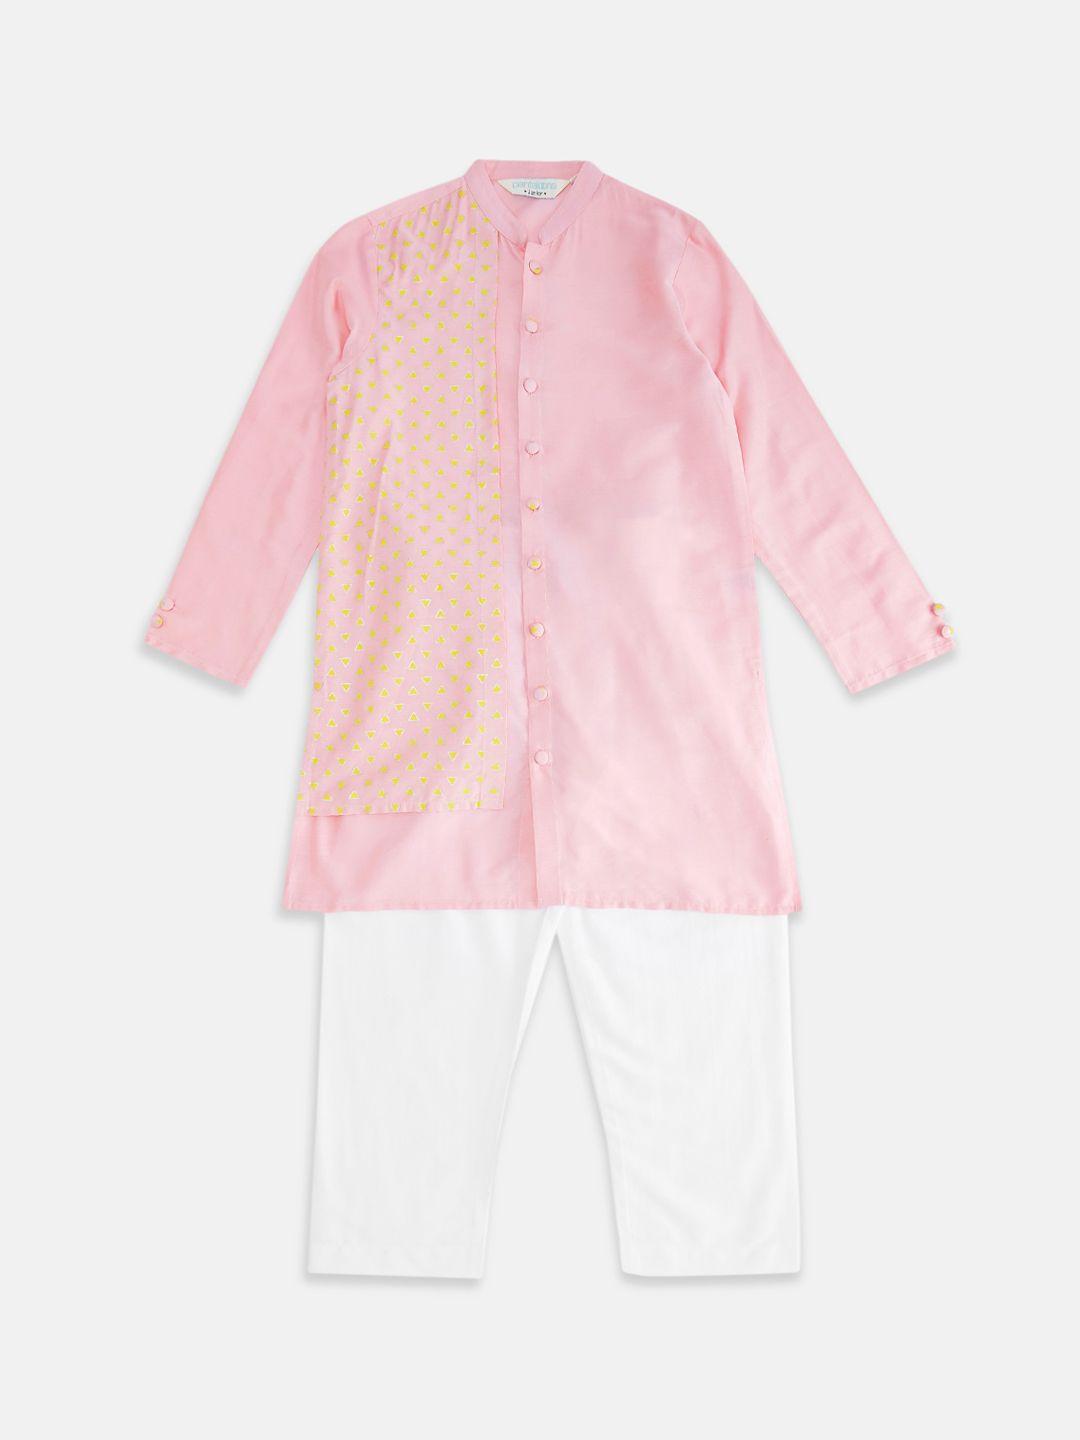 indus-route-by-pantaloons-boys-printed-kurta-with-pyjama-set